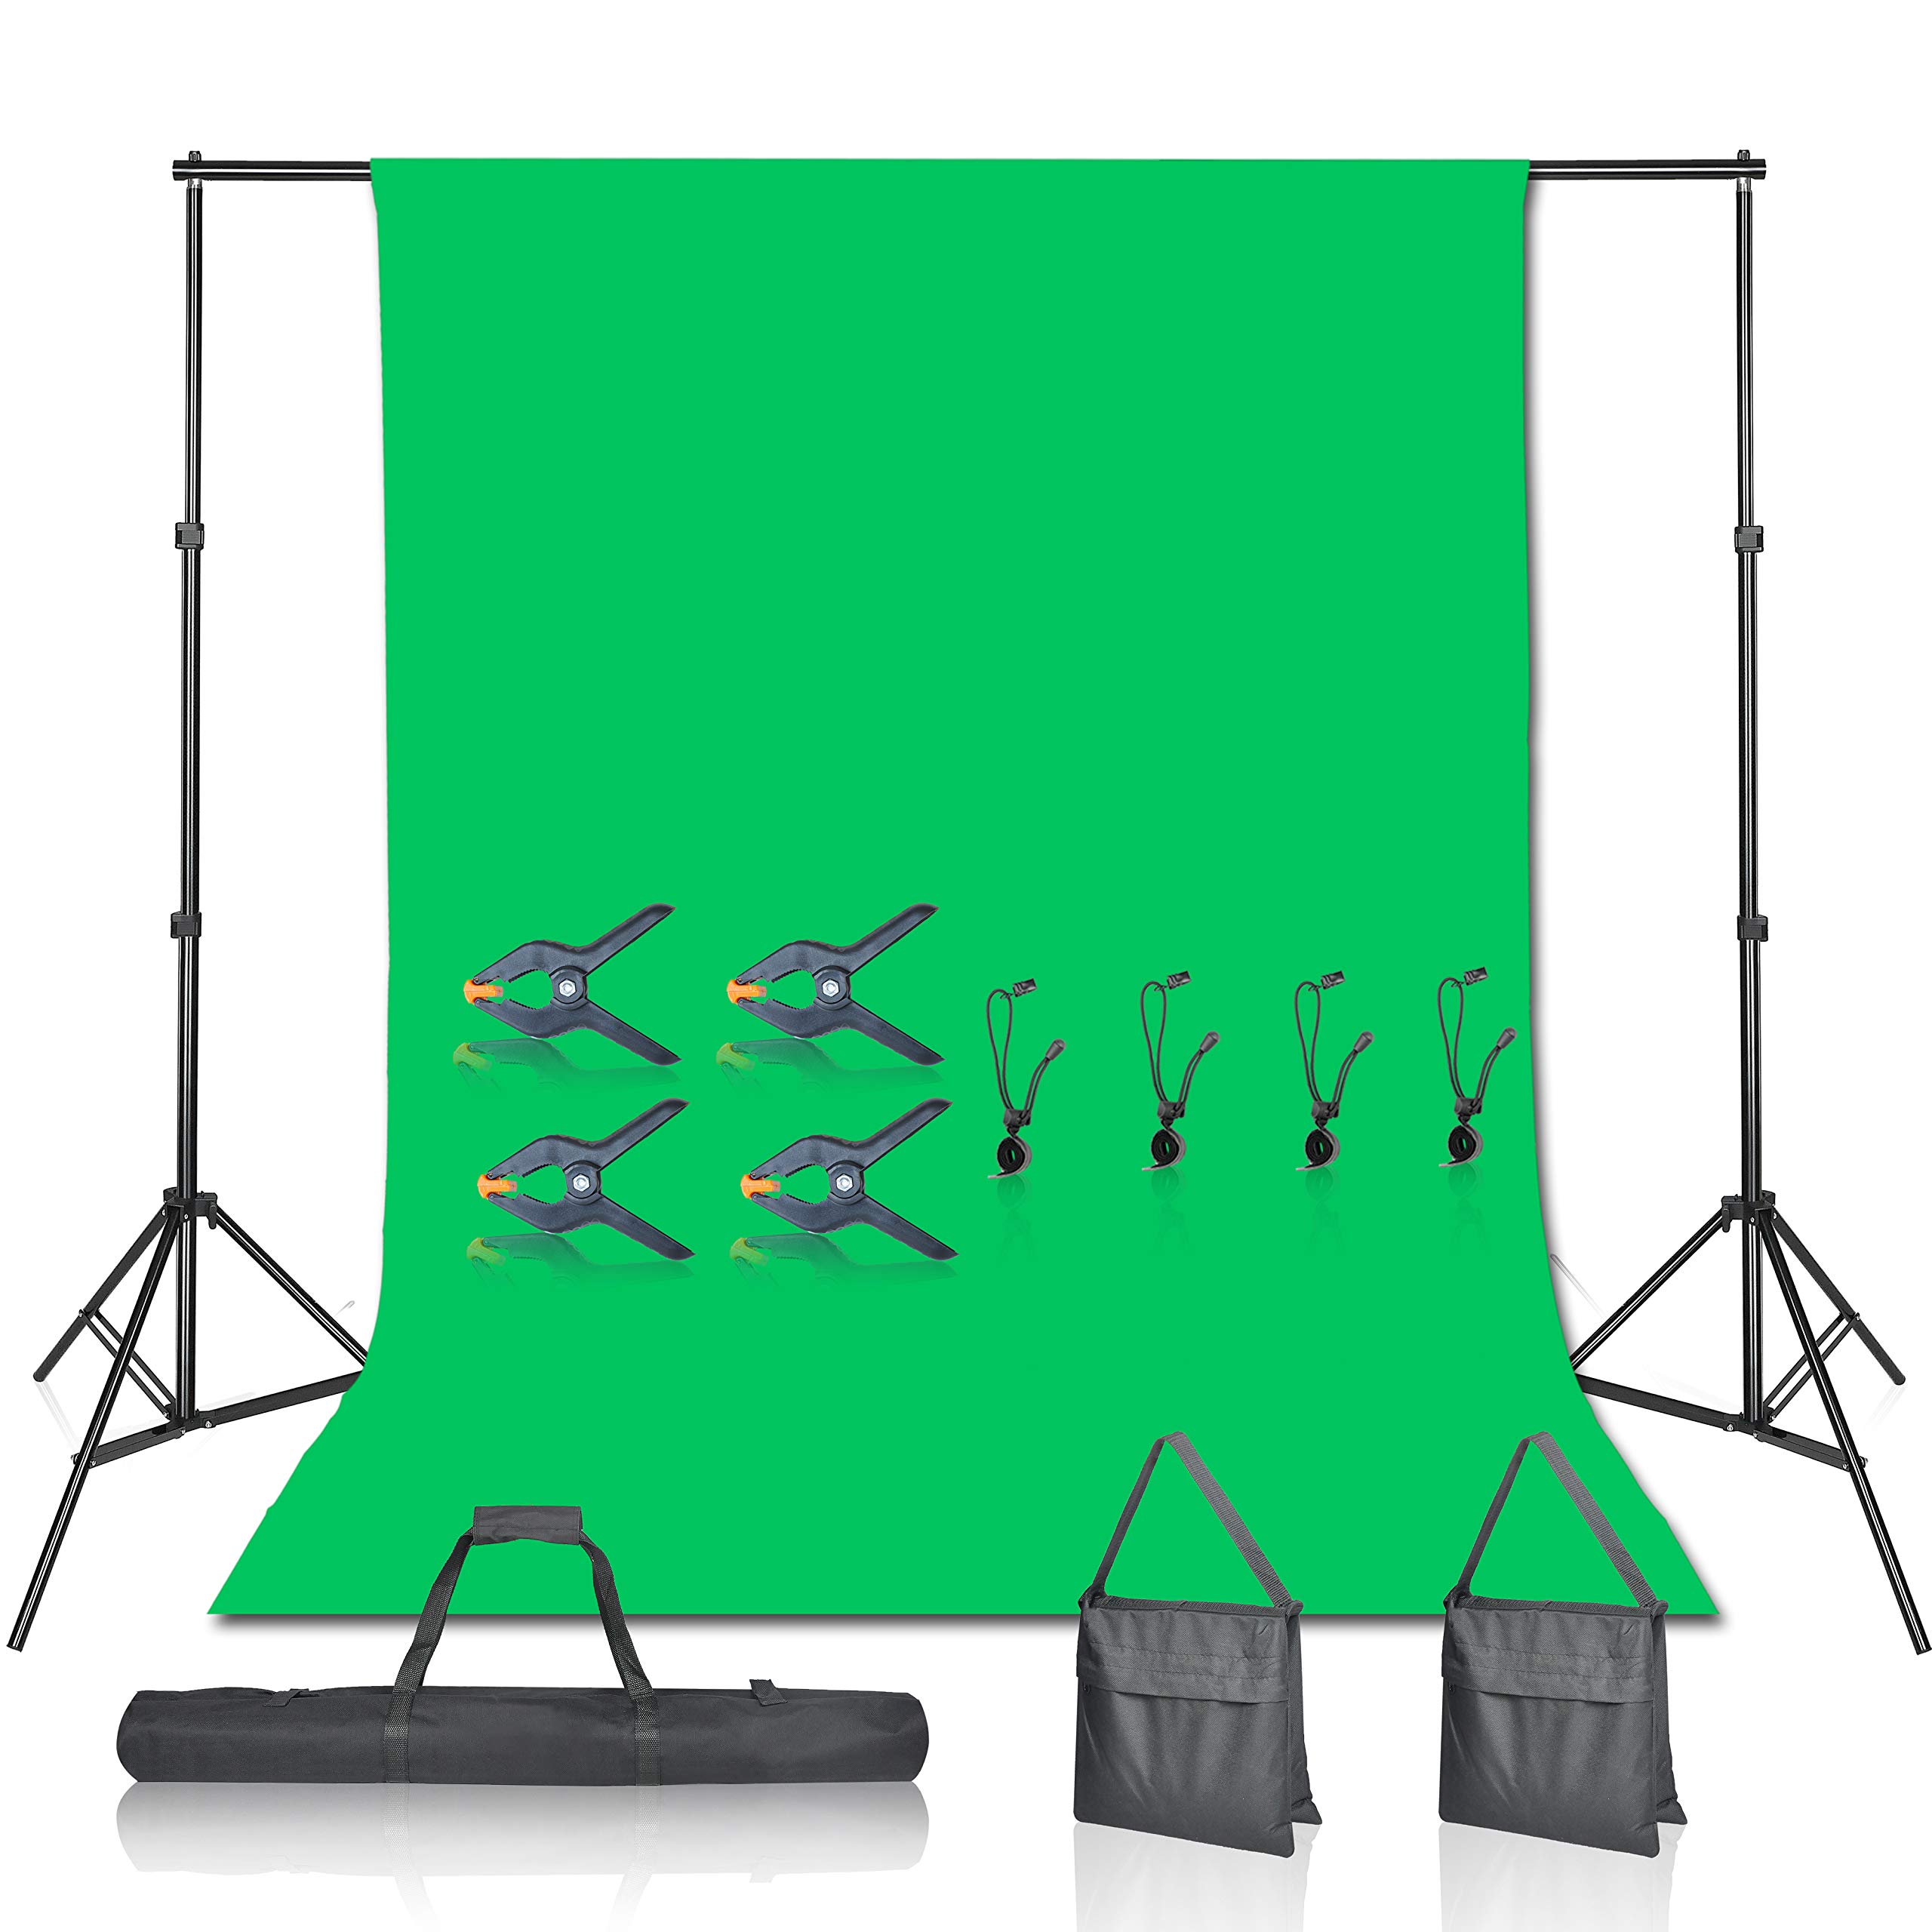 EMART Greenscreen Hintergrund mit Ständer Kit, 2,1x3m, Fotografie Grüner Fotohintergrund Stützständer mit 1,8 x 2,8m 100% Baumwolle Musselin Chromakey Green Screen Set für Porträt Streaming Party